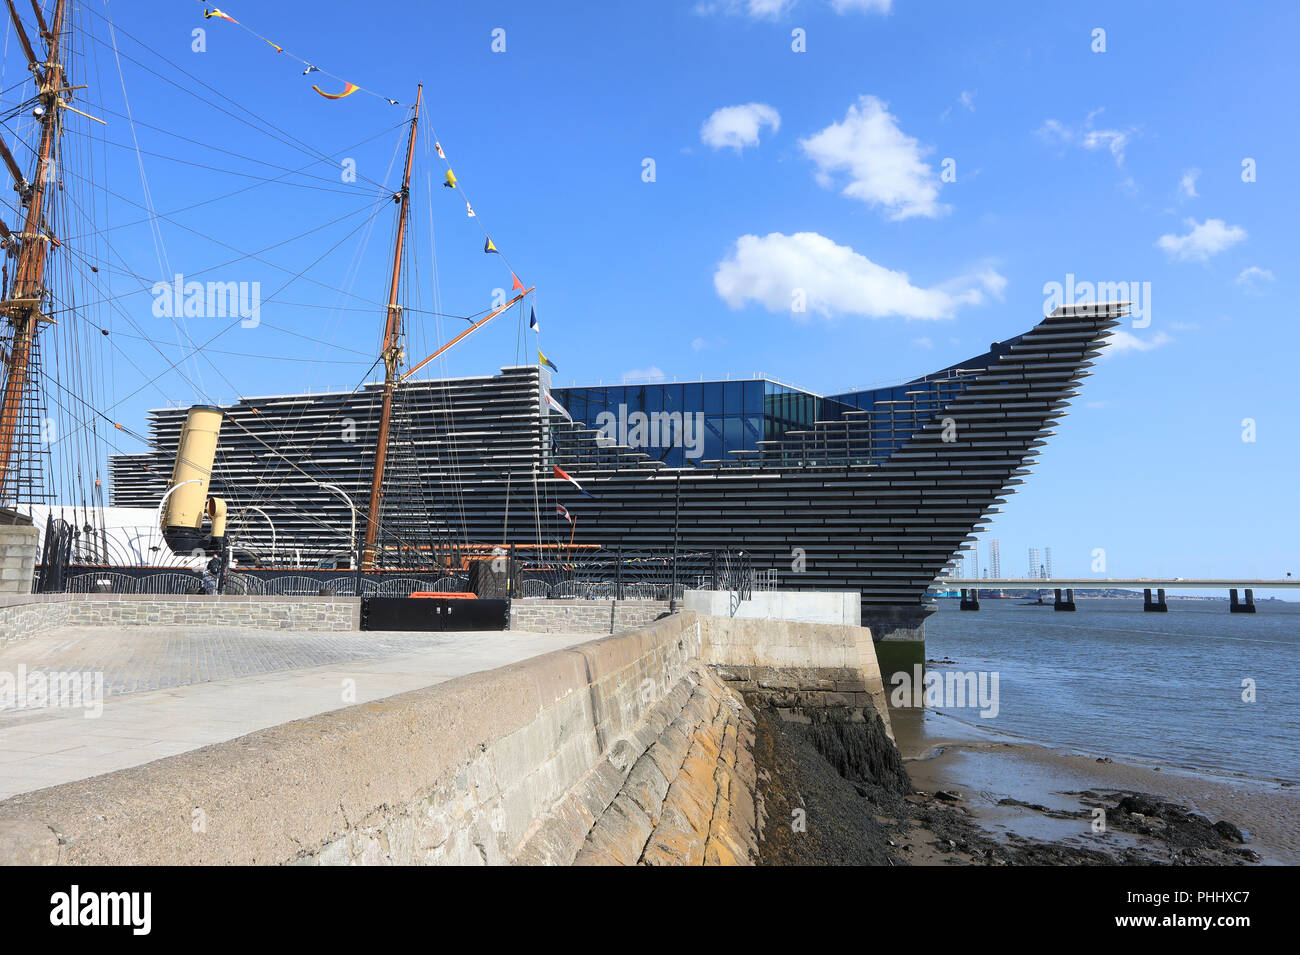 Kengo Kuma's neue V&A Dundee, am Fluss als Teil der Esplanade waterfront Regeneration der Stadt, in Schottland, Großbritannien Stockfoto